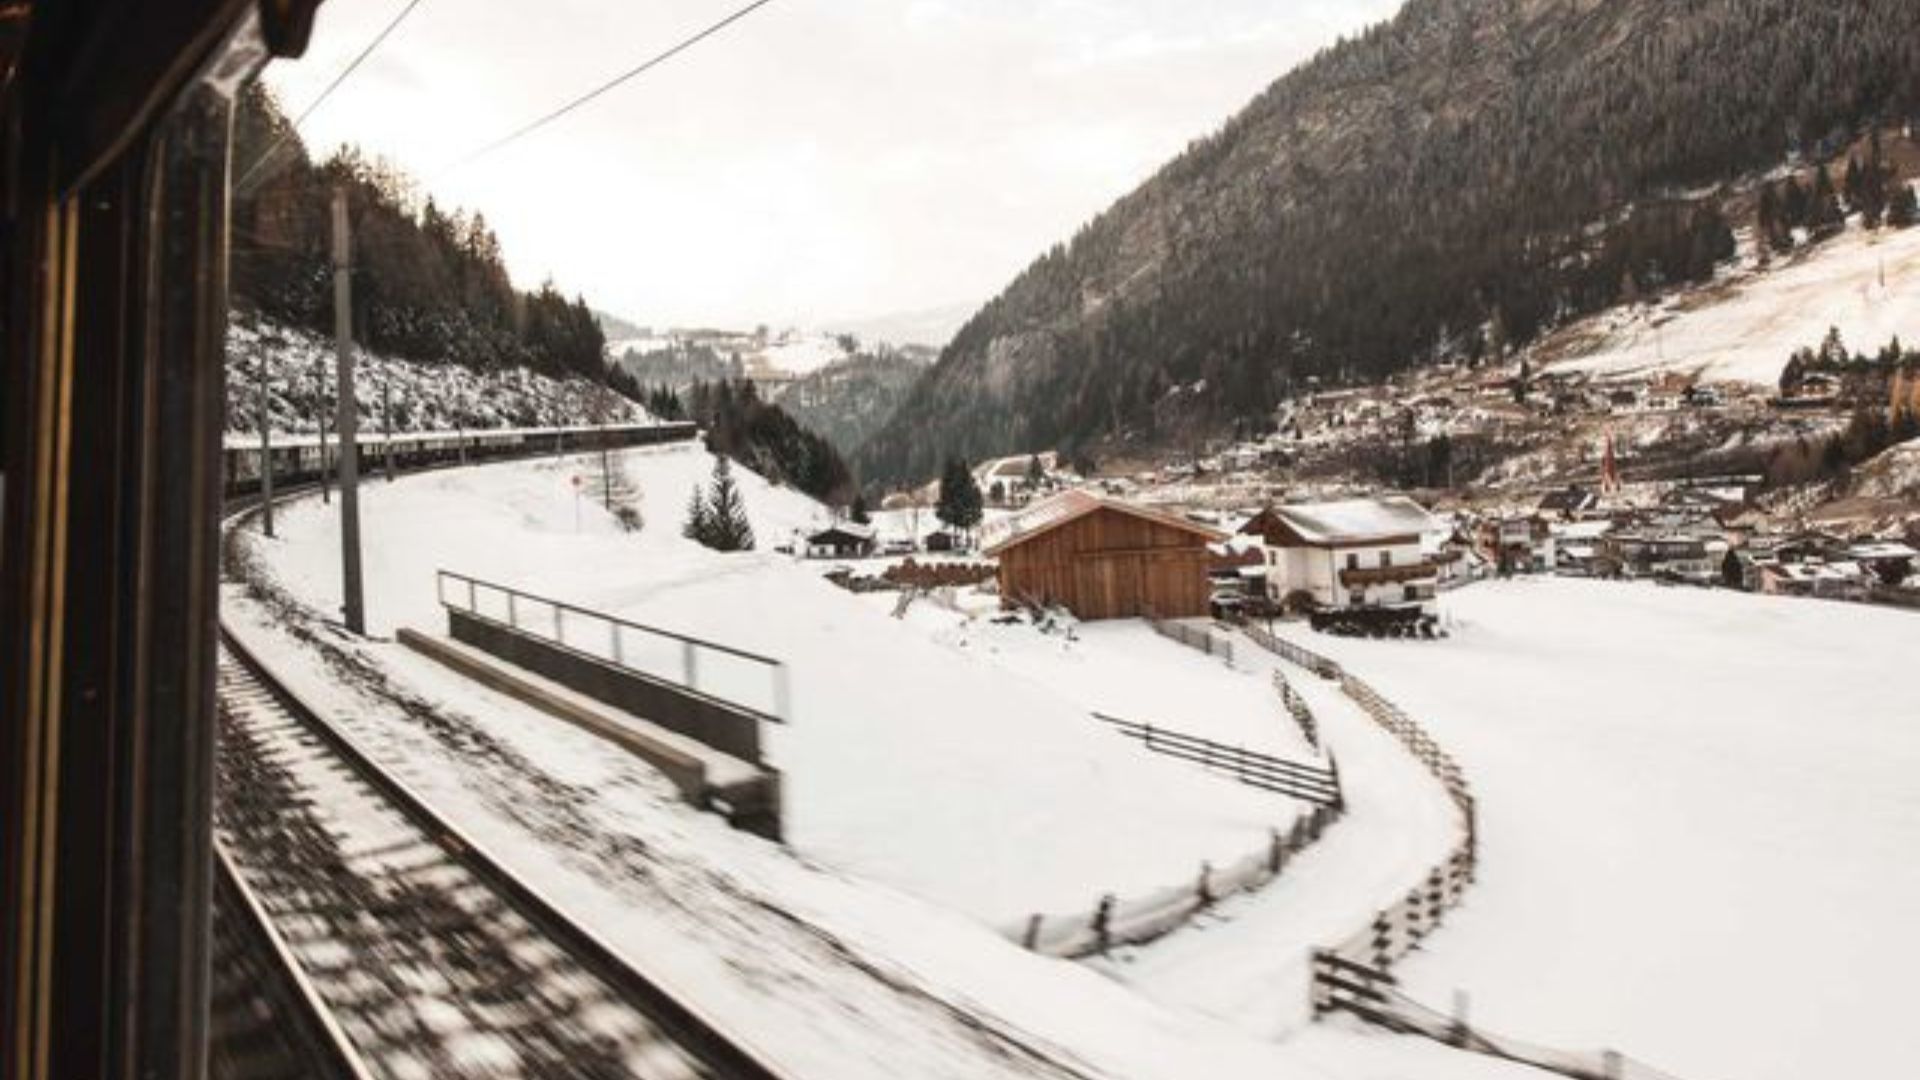 Venice Simplon-Orient-Express Announces Four New Winter Journeys